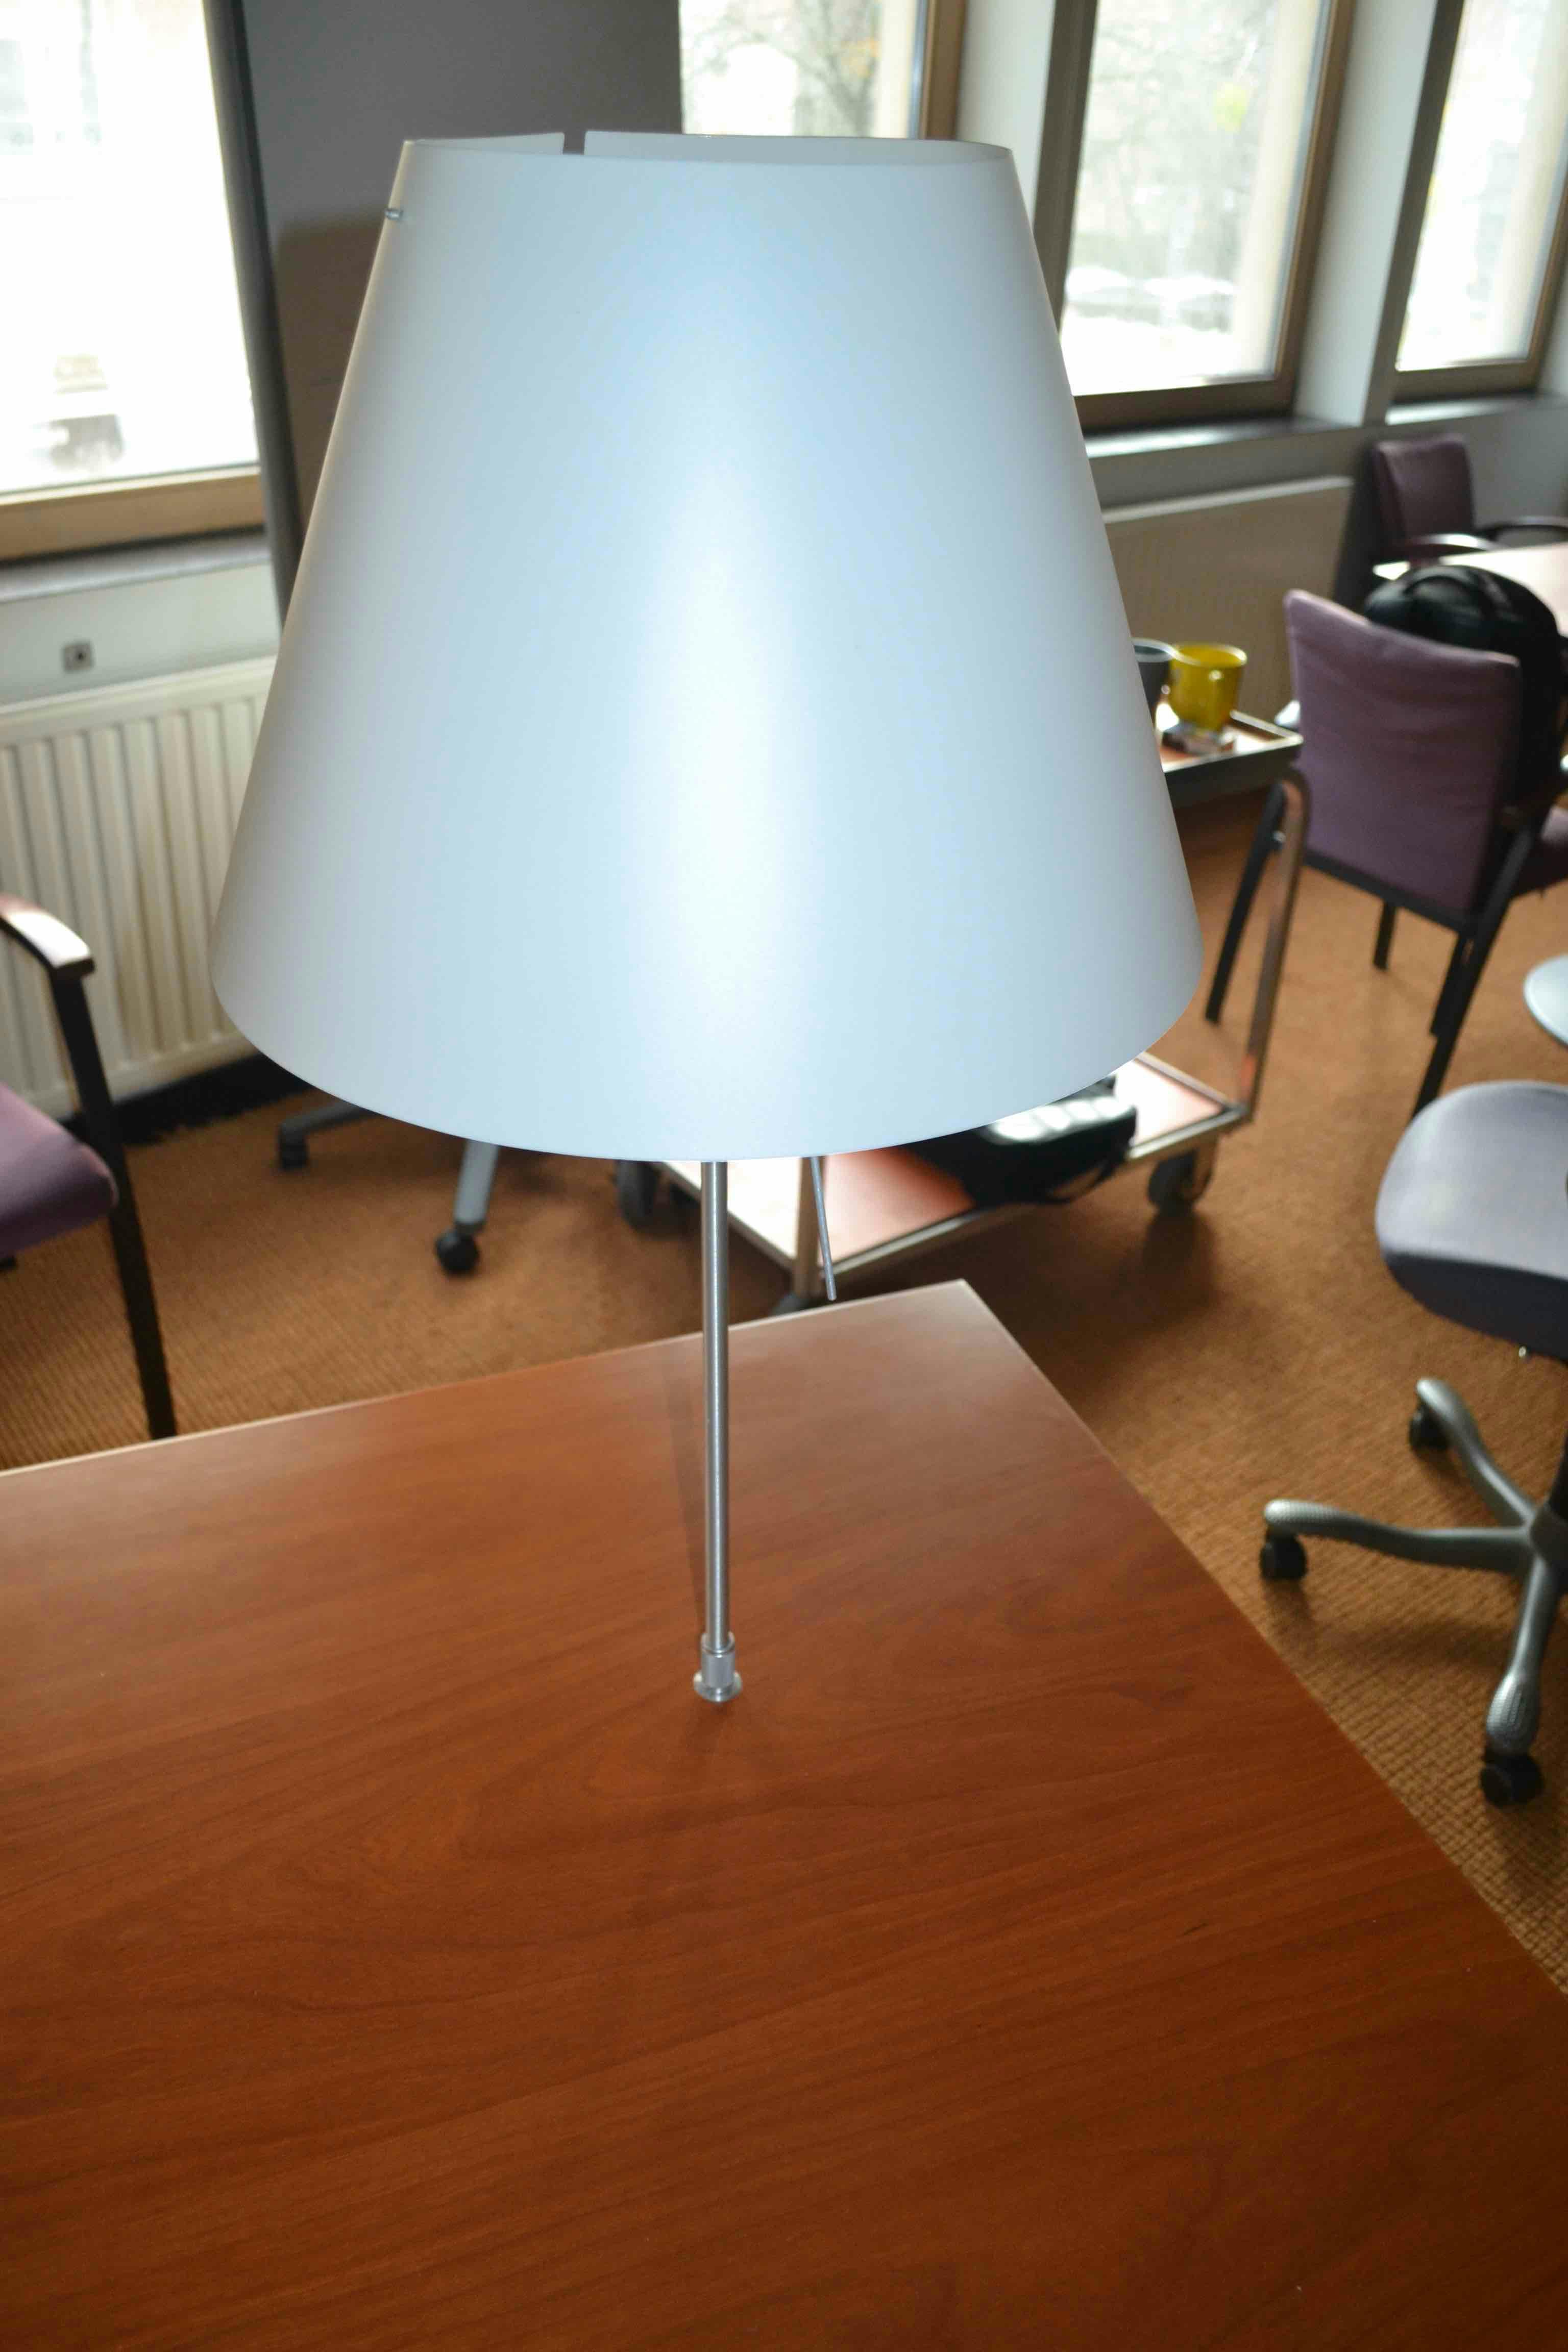 Bureau en L avec lampe / Bureau L Vorm met lamp - Qualité de seconde main "Bureaux" - Relieve Furniture - 2